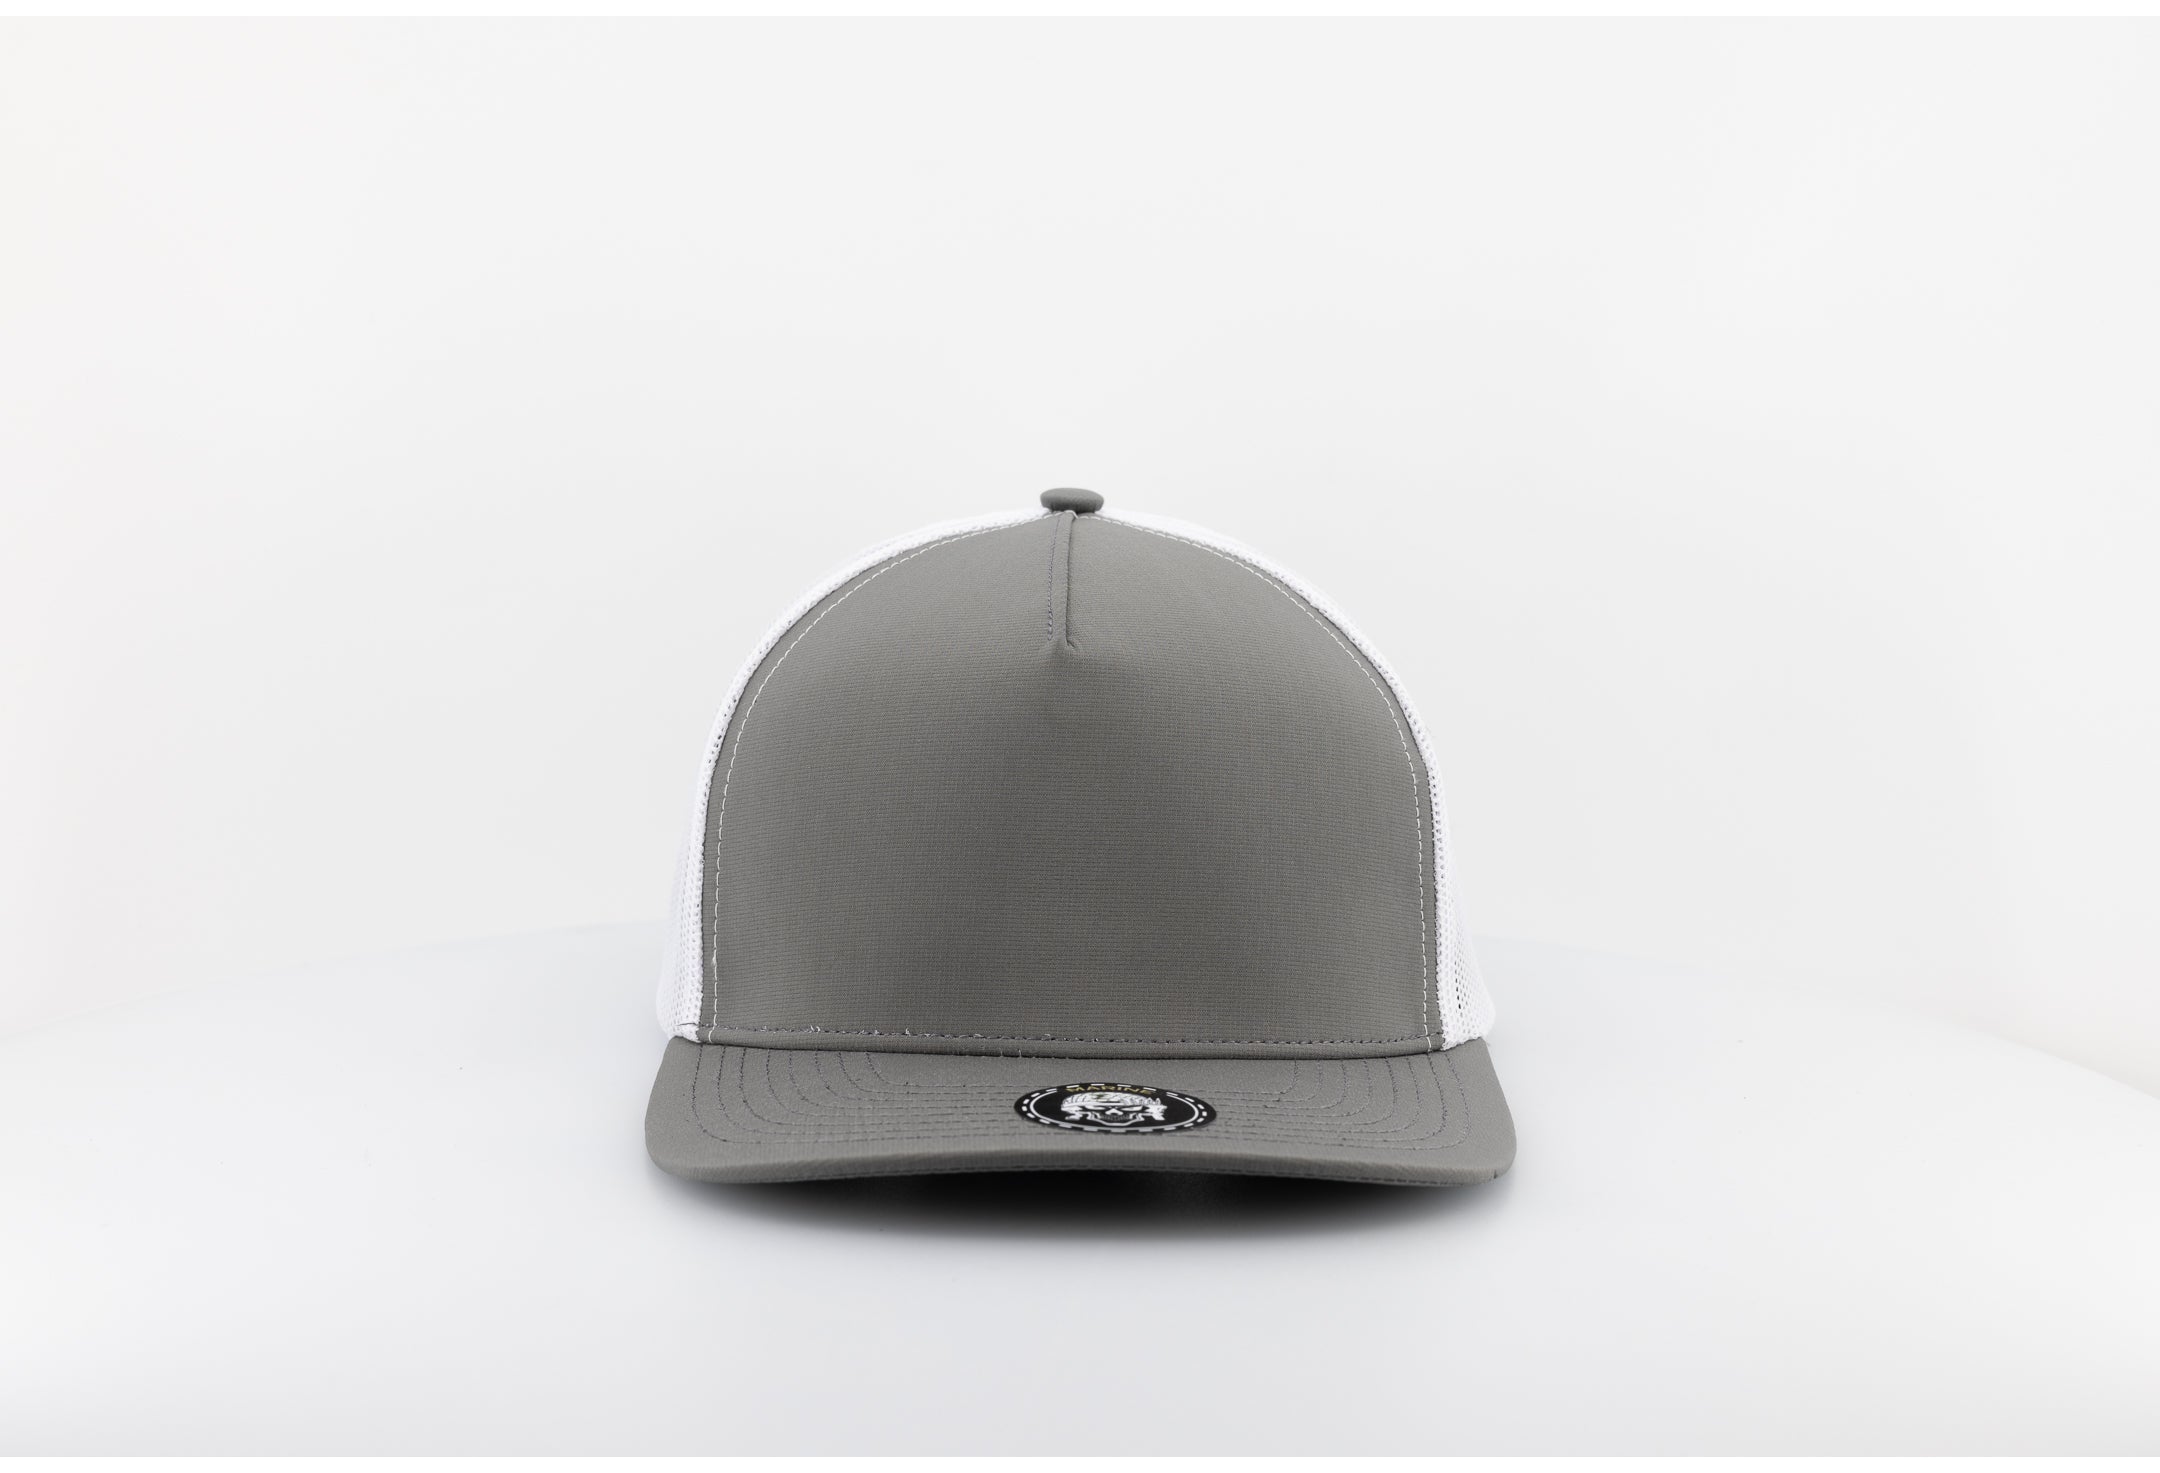 MARINE Blank-Water Repellent hat-Zapped Headwear-Steel Green/Black-Zapped Headwear